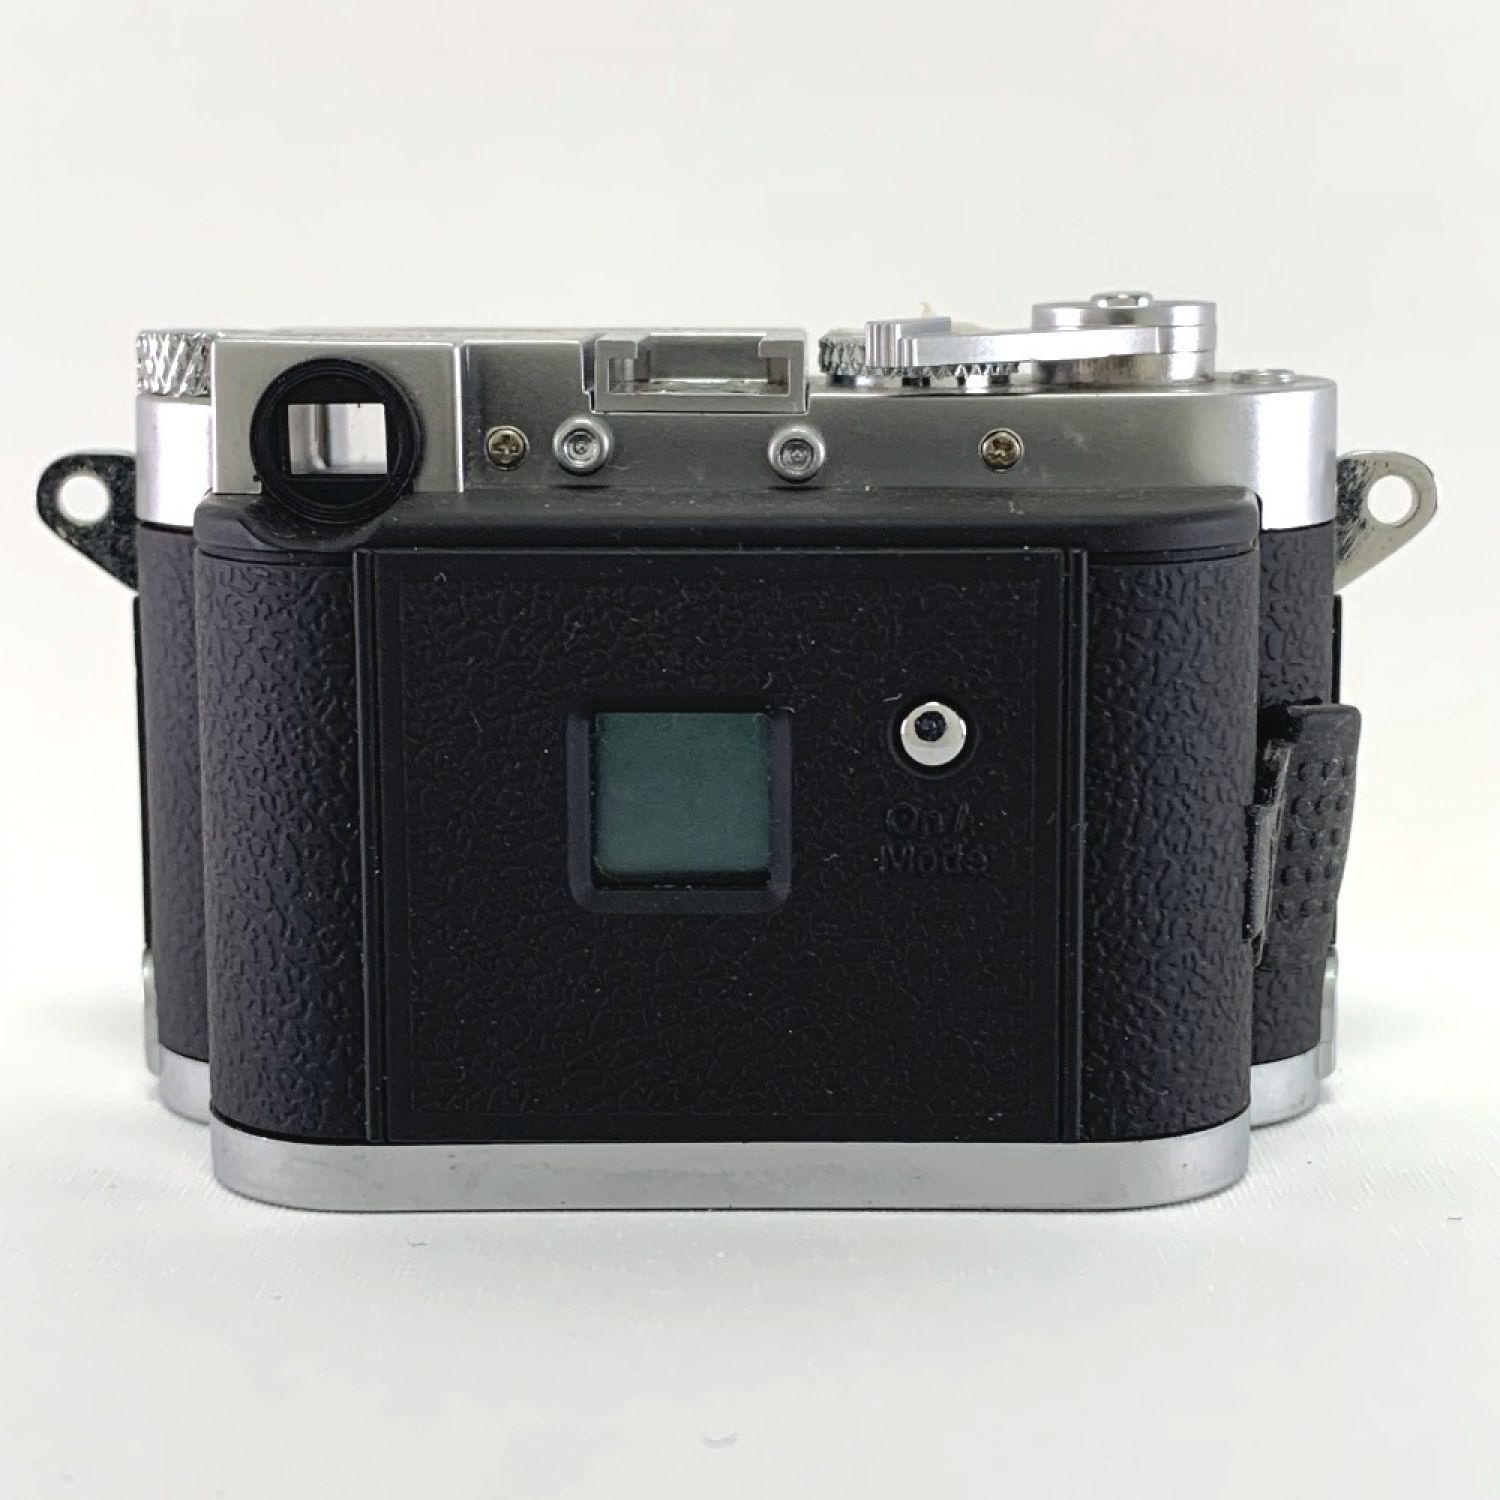 中古】 MINOX DCC Leica M3（4.0） ジャンク品 通電確認済み 動作